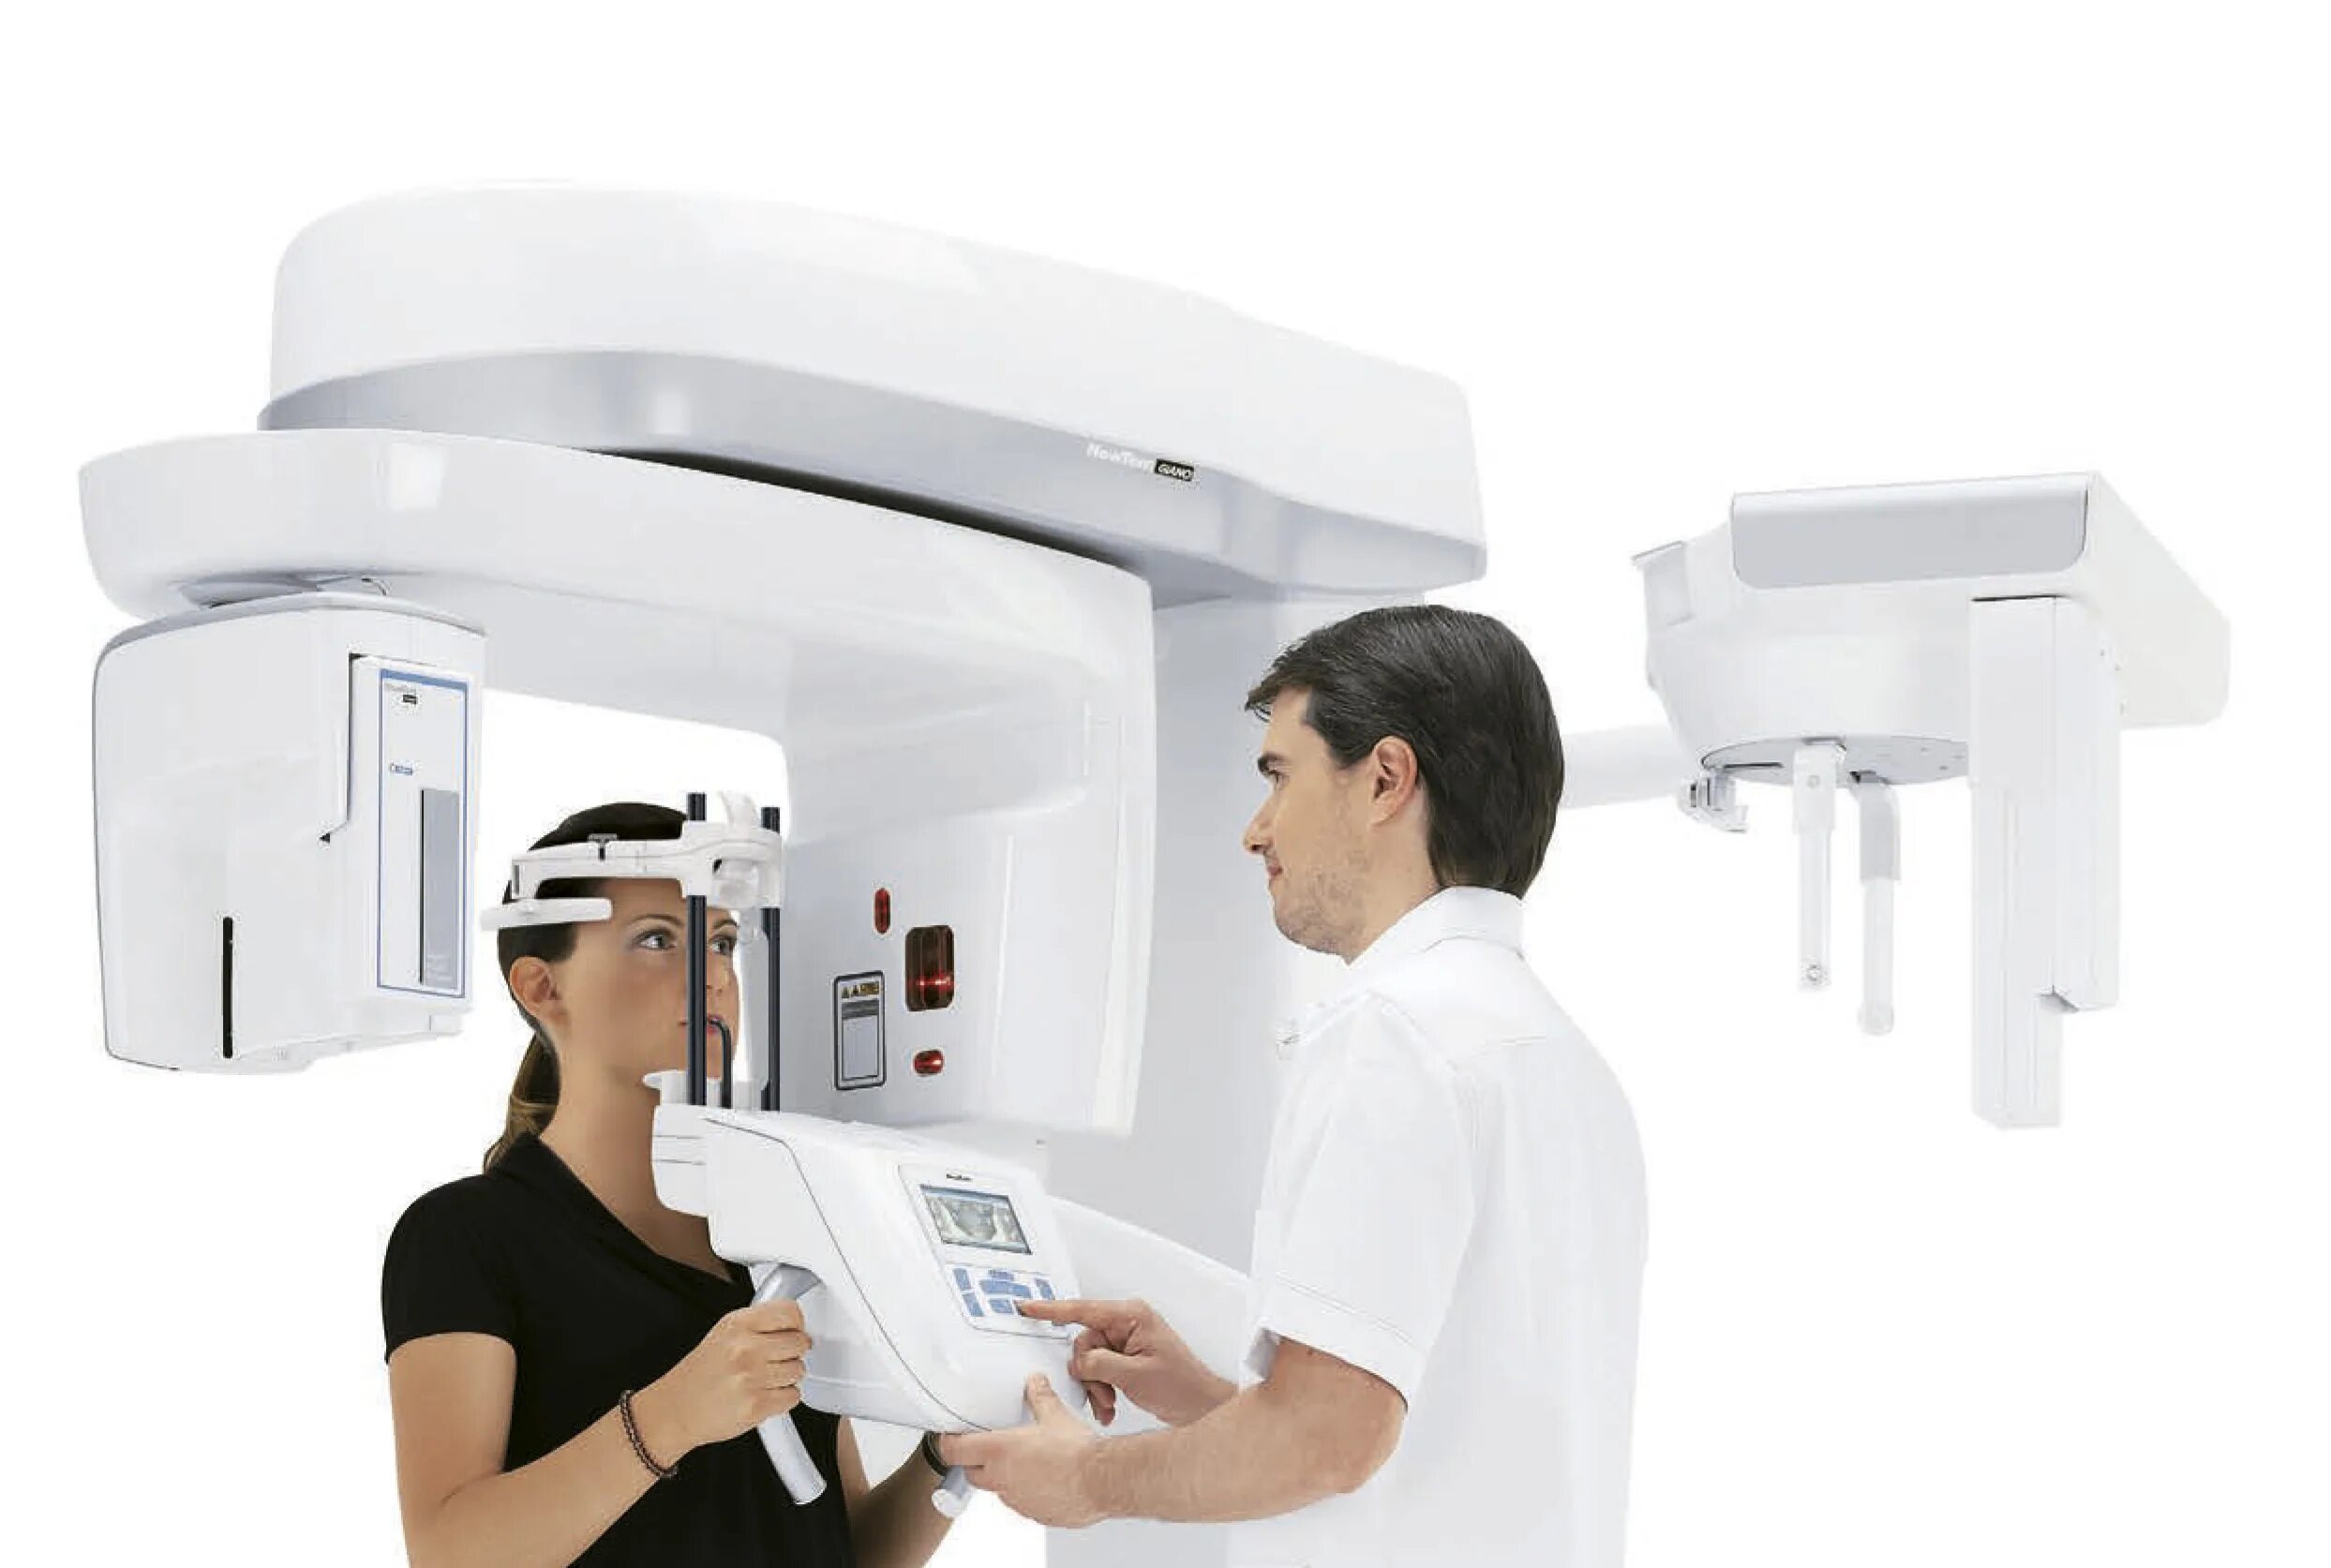 КЛКТ томограф. NEWTOM 3g стоматологический компьютерный томограф. Аппарат рентгеновский дентальный цифровой панорамный Smart Plus. New Tom Giano томограф.